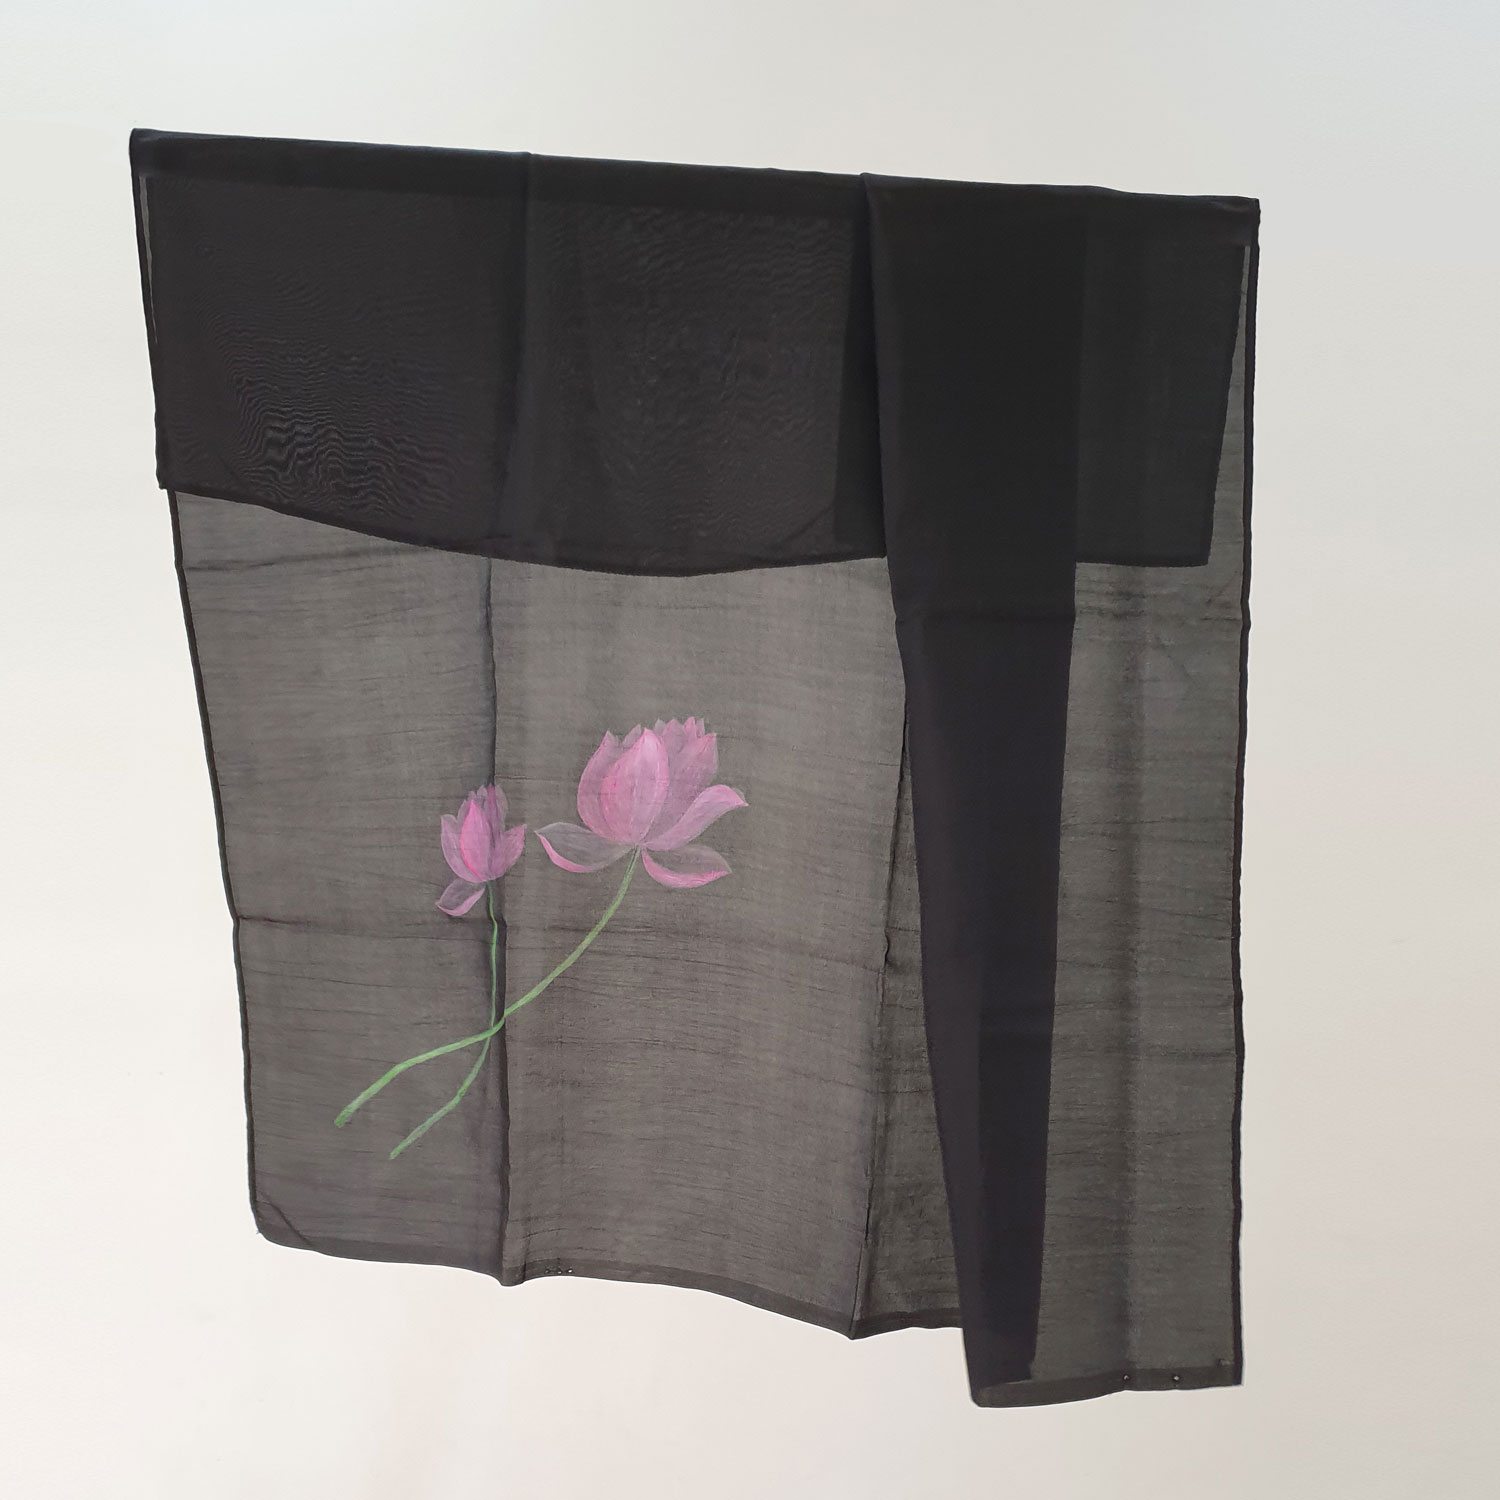 Khăn lụa tơ tằm nền đen vẽ hoa sen, chất liệu màu nước nhập khẩu cao cấp, tan màu, giữ được độ mềm mại của khăn.